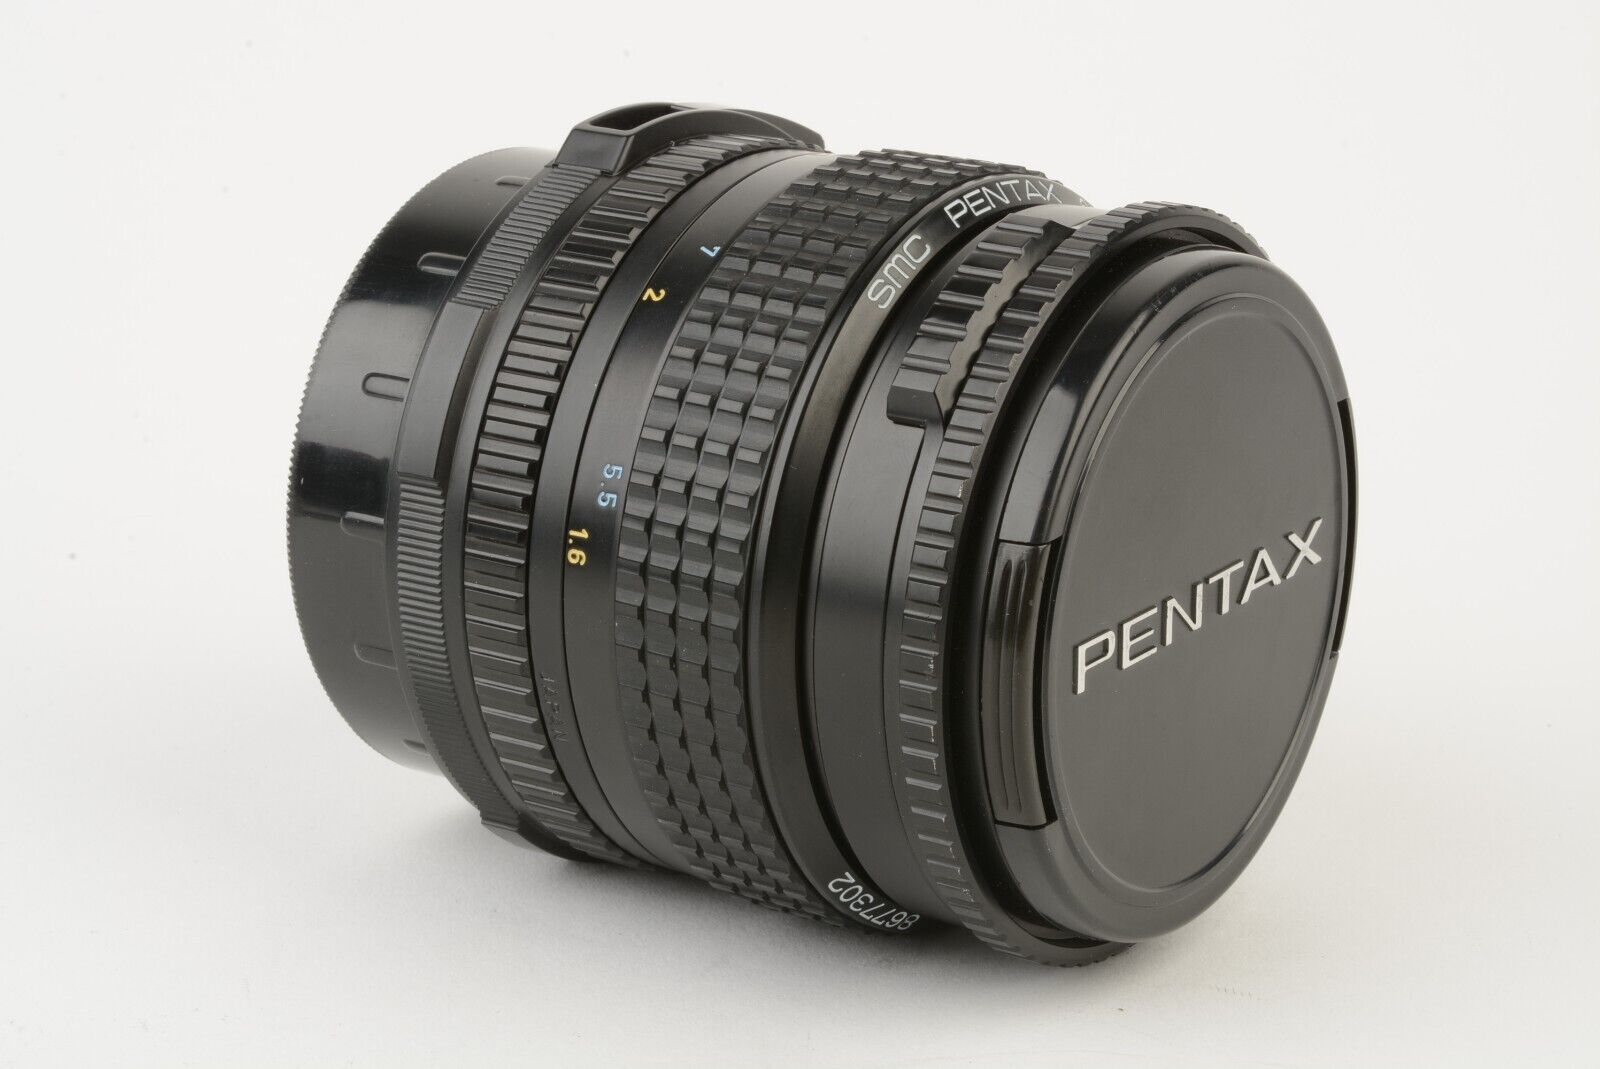 EXC++ PENTAX 67 165mm f4 SMC LS LENS 6x7 w/CASE